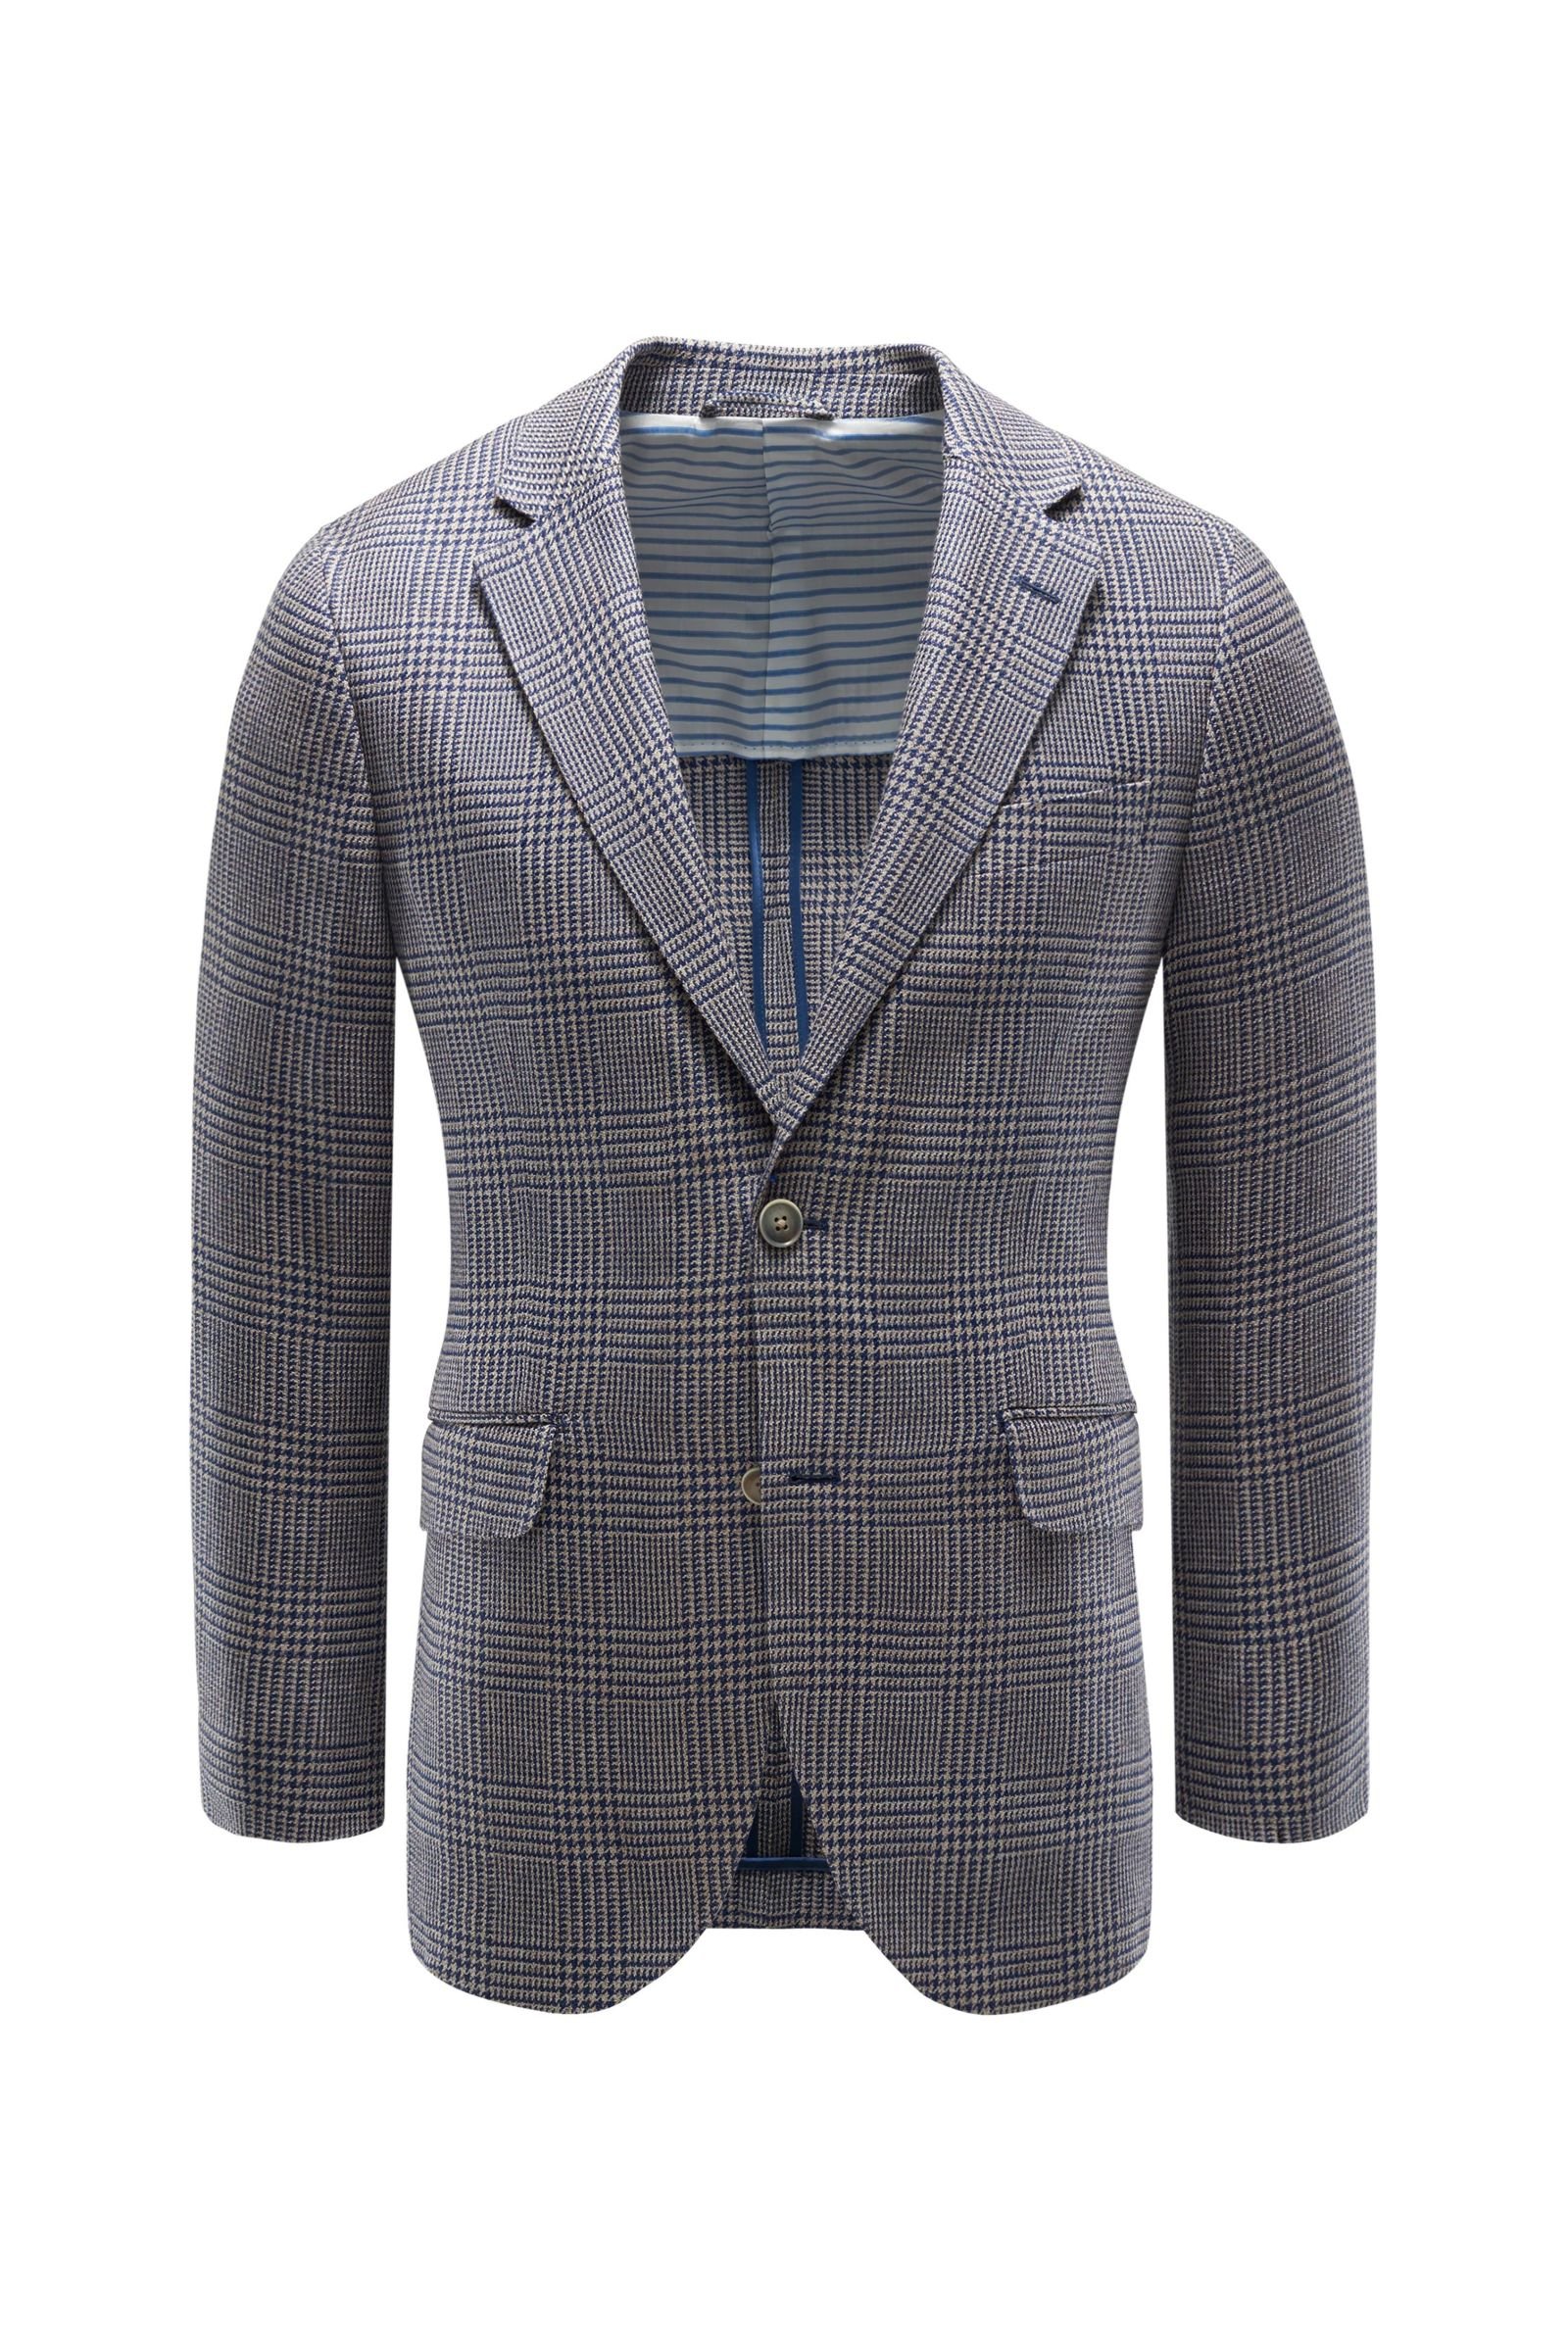 Smart-casual jacket dark blue/beige checked